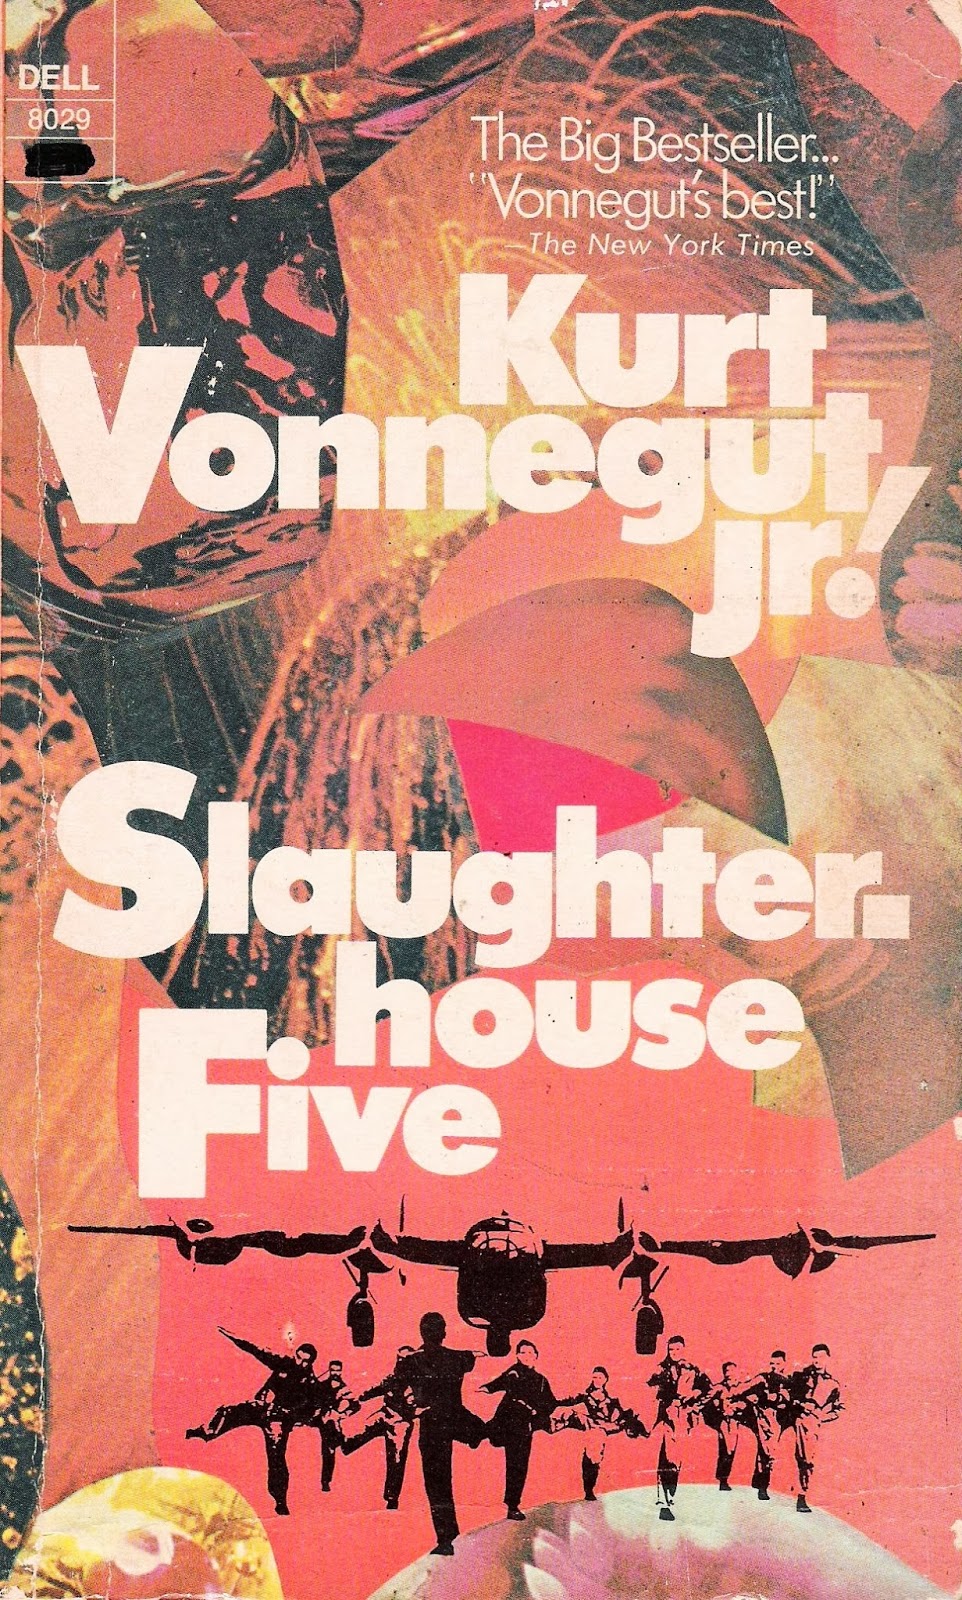 Kurt Vonnegut Research Paper